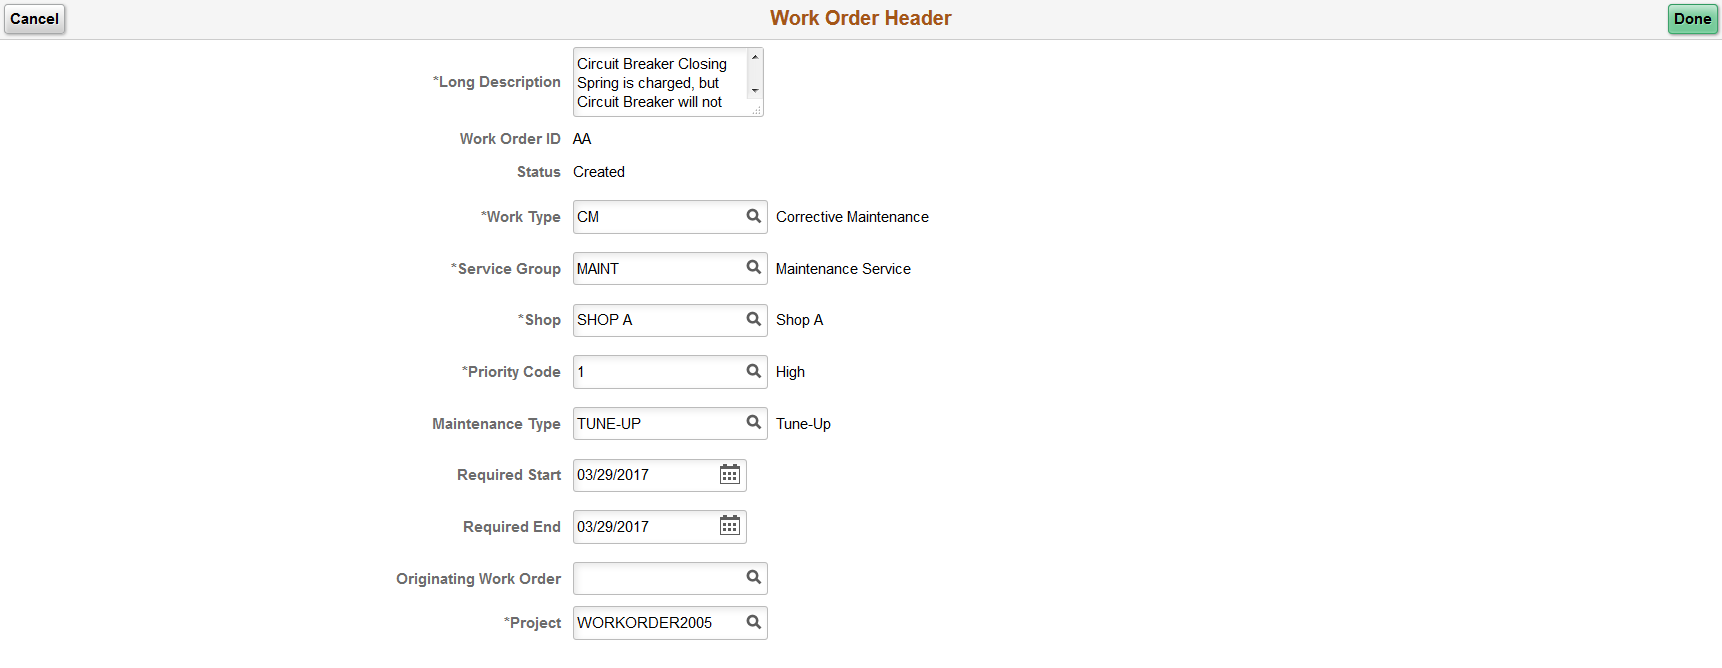 Work Order Header Information